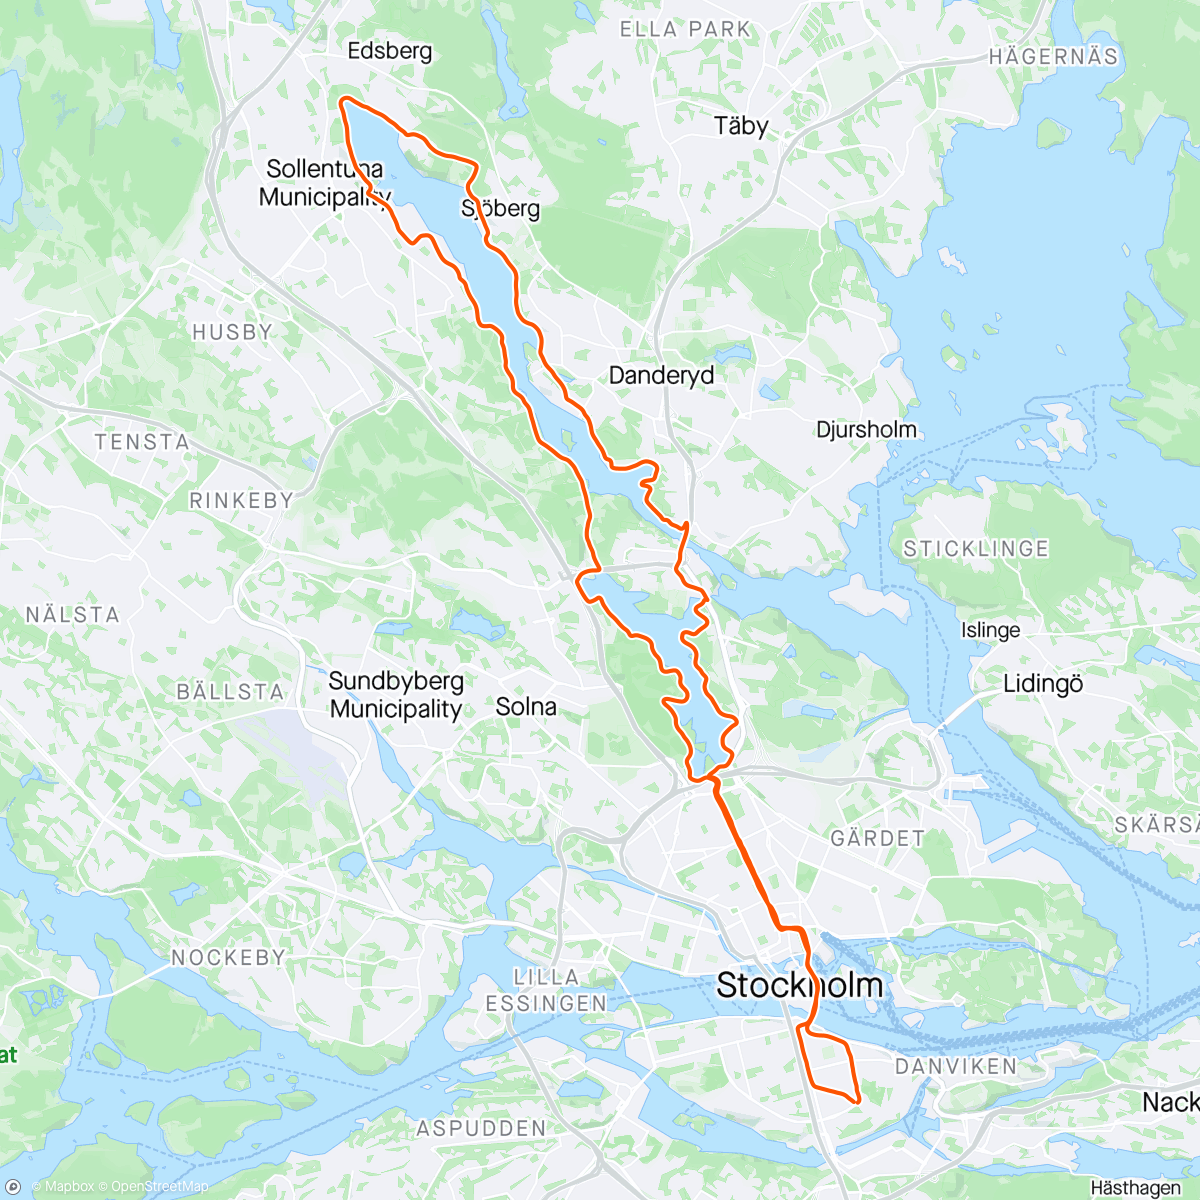 「Edsviken runt」活動的地圖